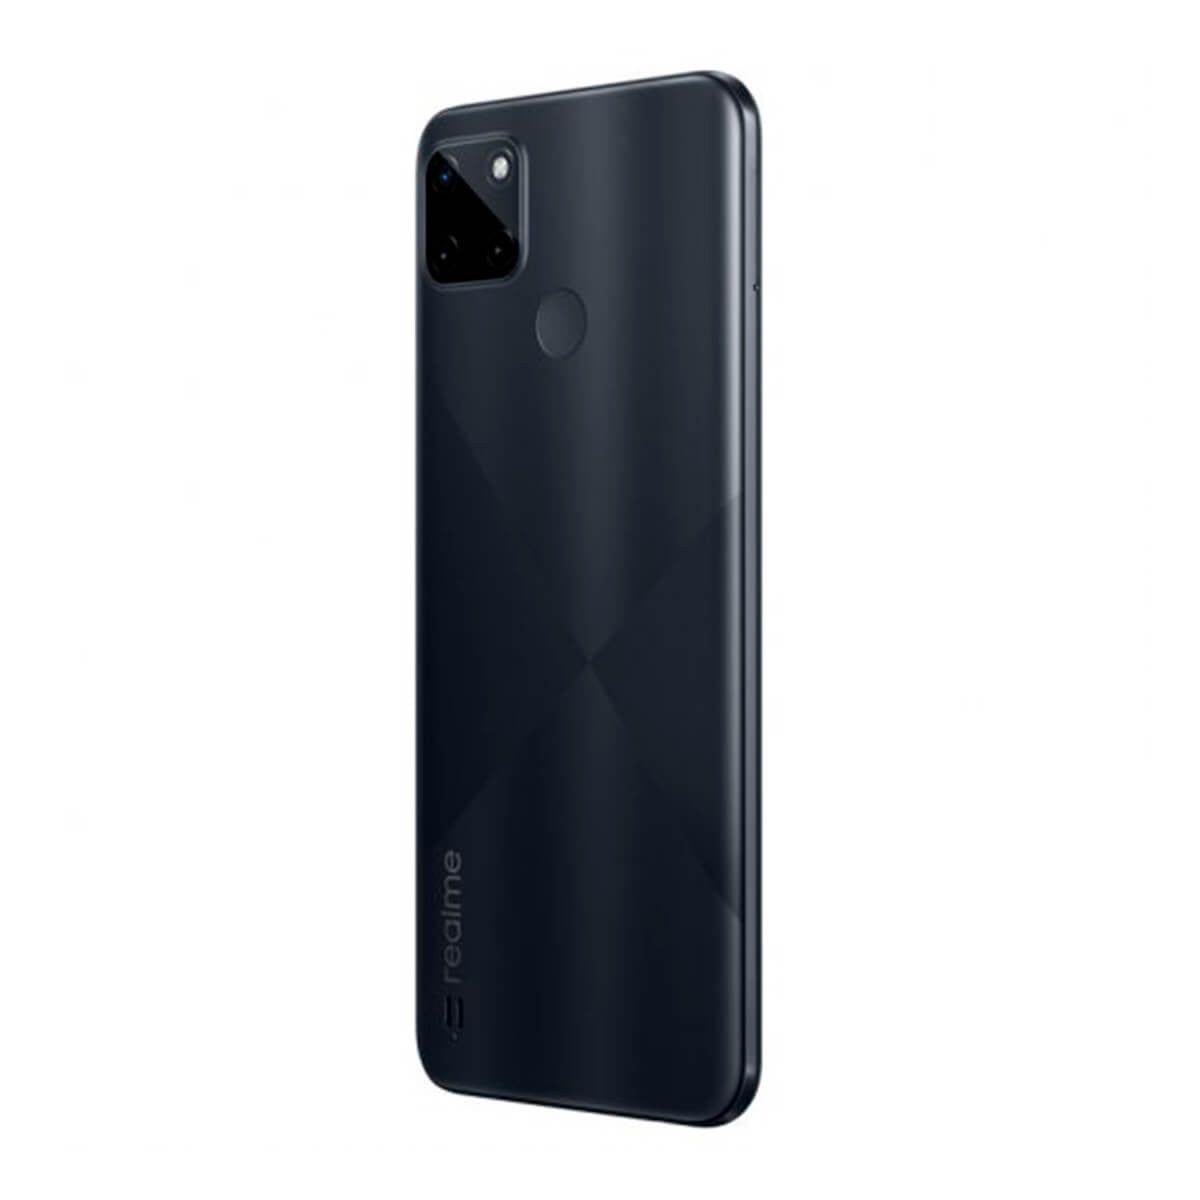 Realme C21-Y 3GB/32GB Negro (Cross Black) Dual SIM Smartphone | Realme